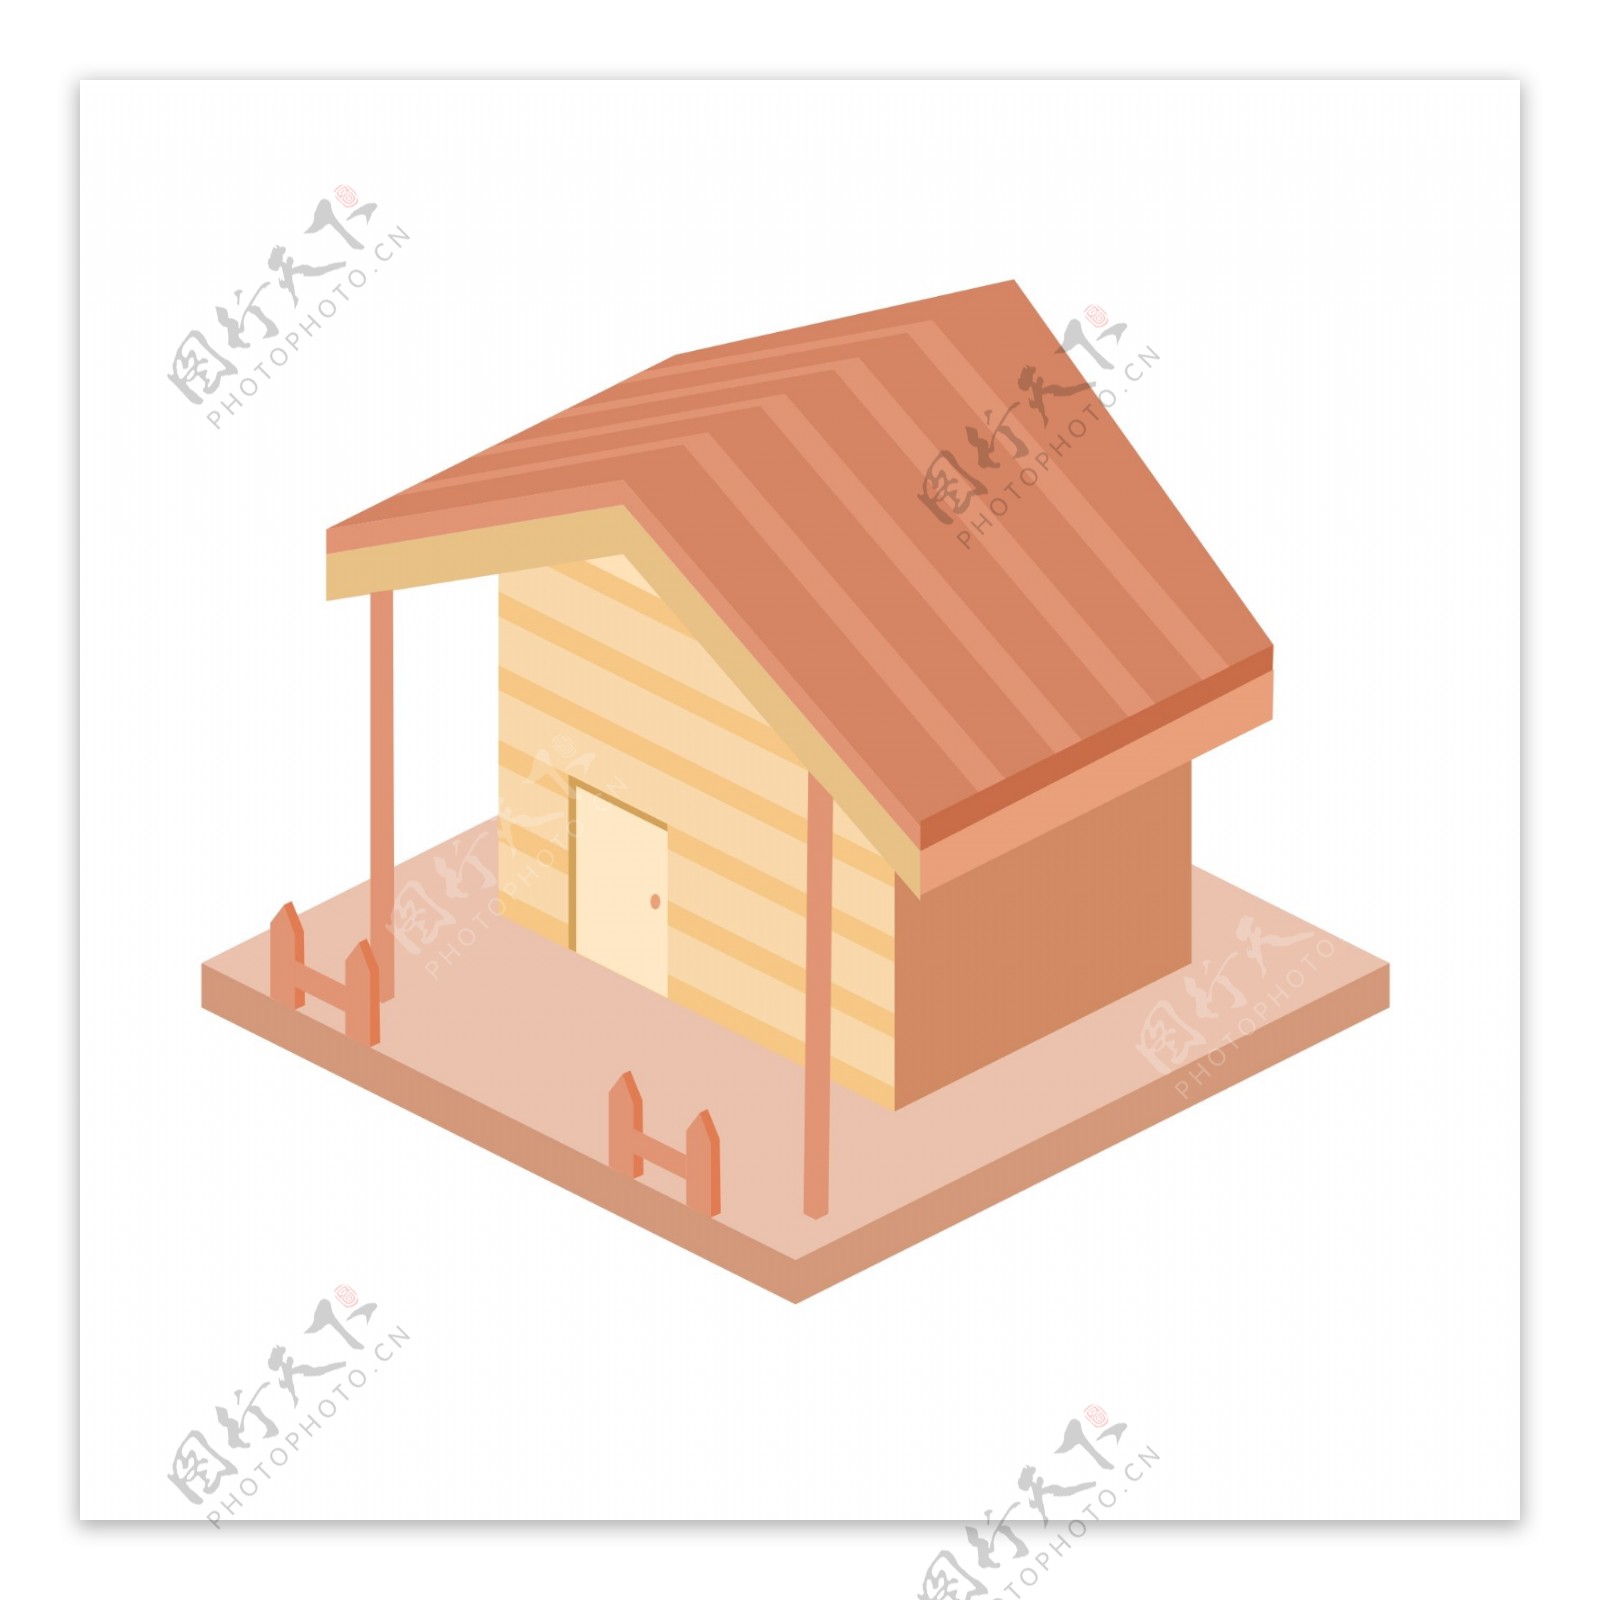 立体木质房屋